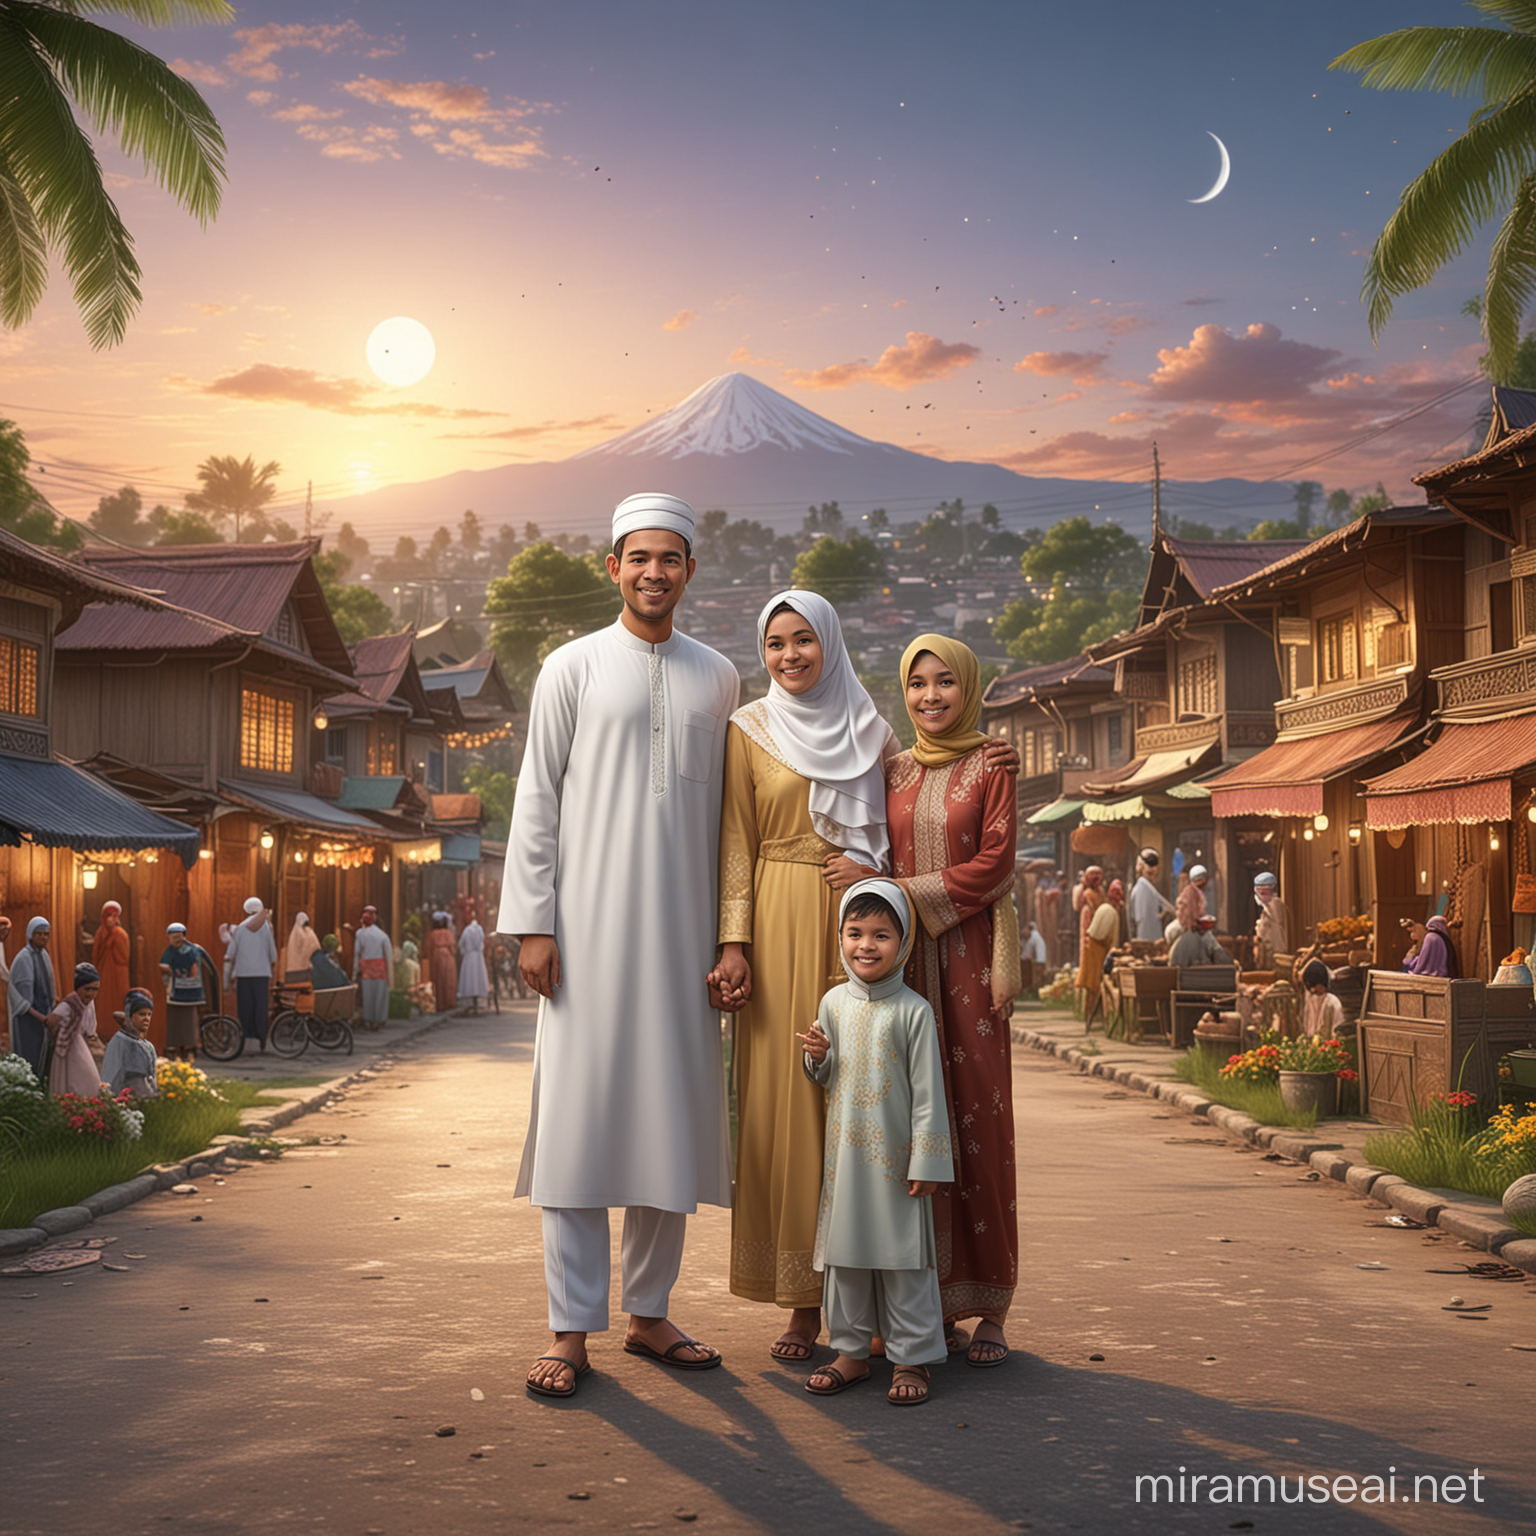 karikatur 4 dimensi keluarga indonesia dengan 1 anak berbusana muslim, ilustrasi yang menggambarkan perayaan hari raya idul fitri lebaran di sebuah desa atau kota, gambar harus mencakup berbagai elemen dan karakter, seperti orang yang melakukan aktifitas sehari-hari, kendaraan, bangunan, dan lingkungan alam. realistik, fokus, 8k